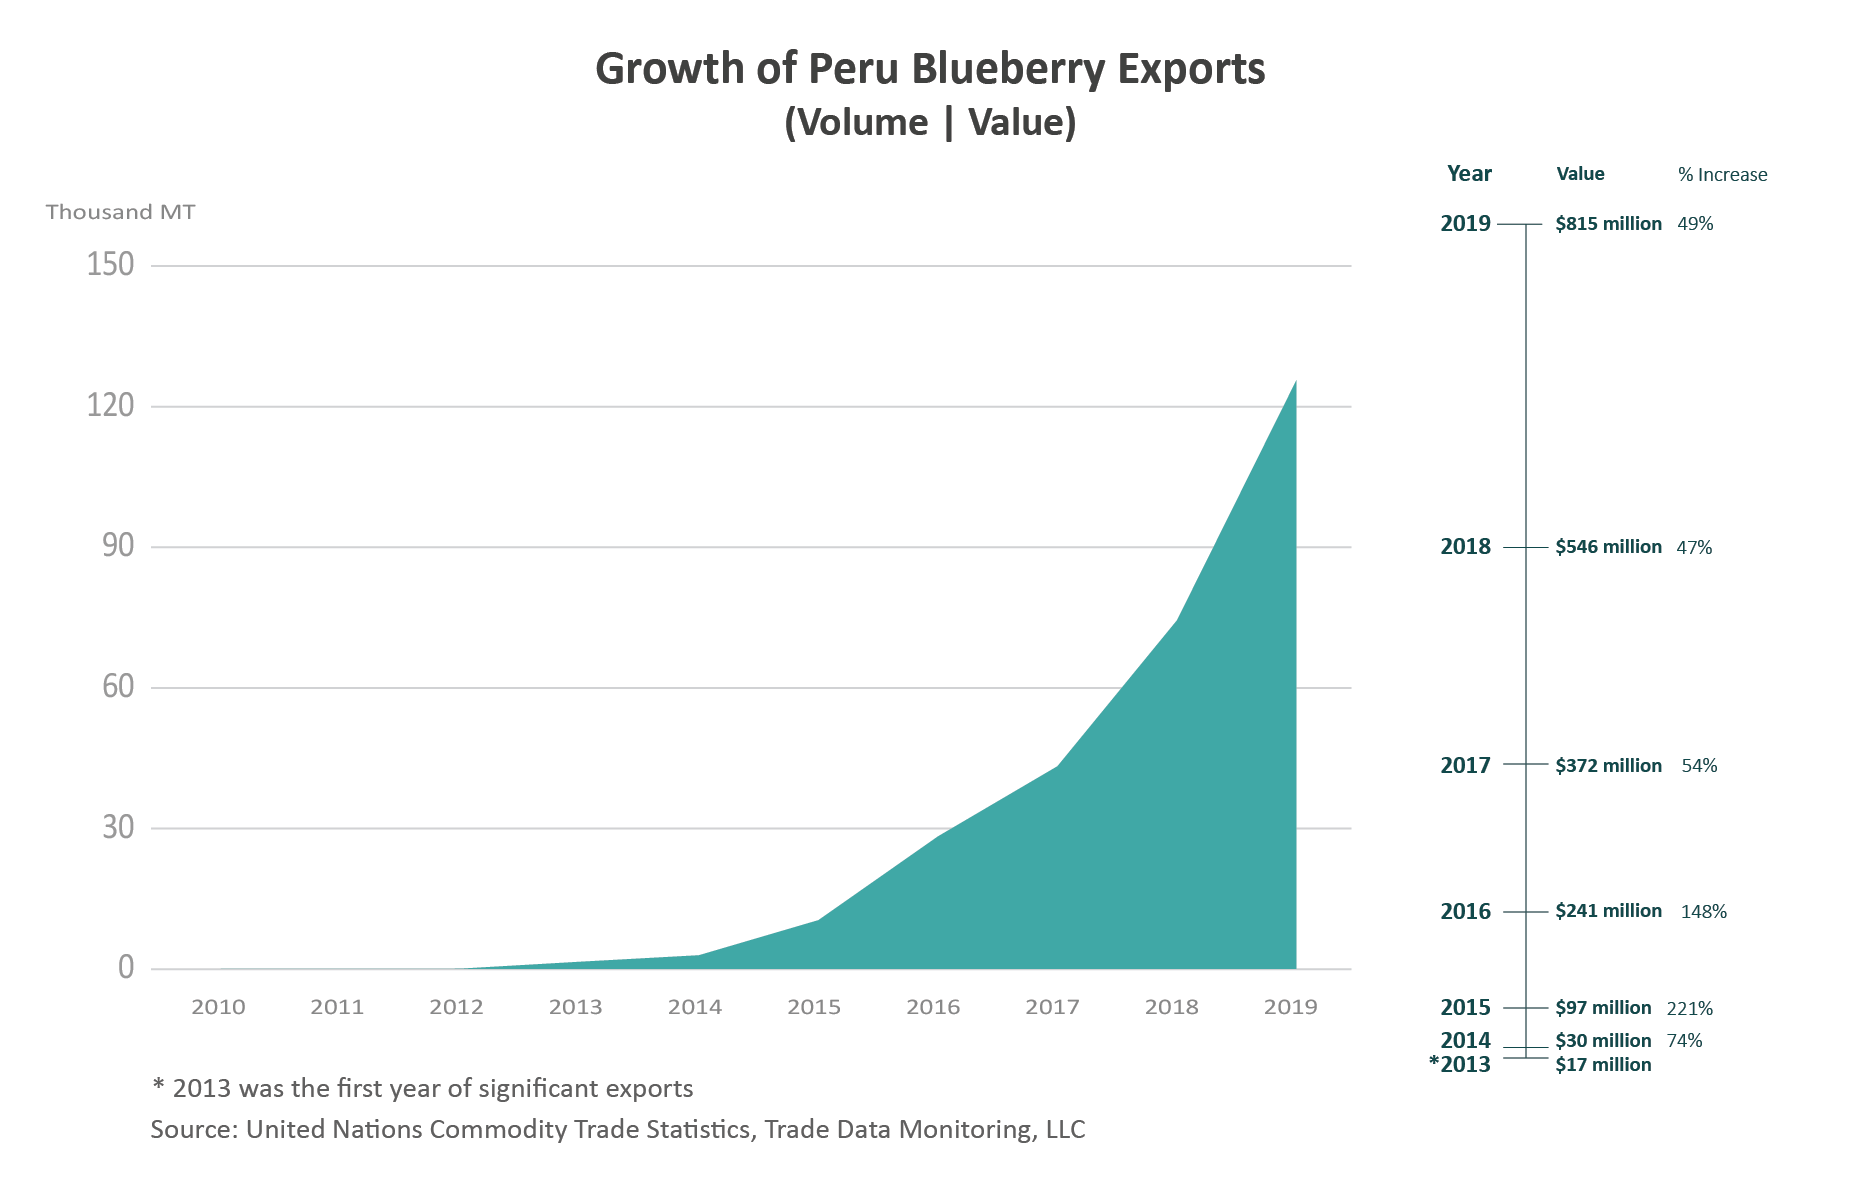 Una serie de gráficos que muestran los aumentos en volumen y valor de las exportaciones de arándanos de Perú, particularmente desde 2012